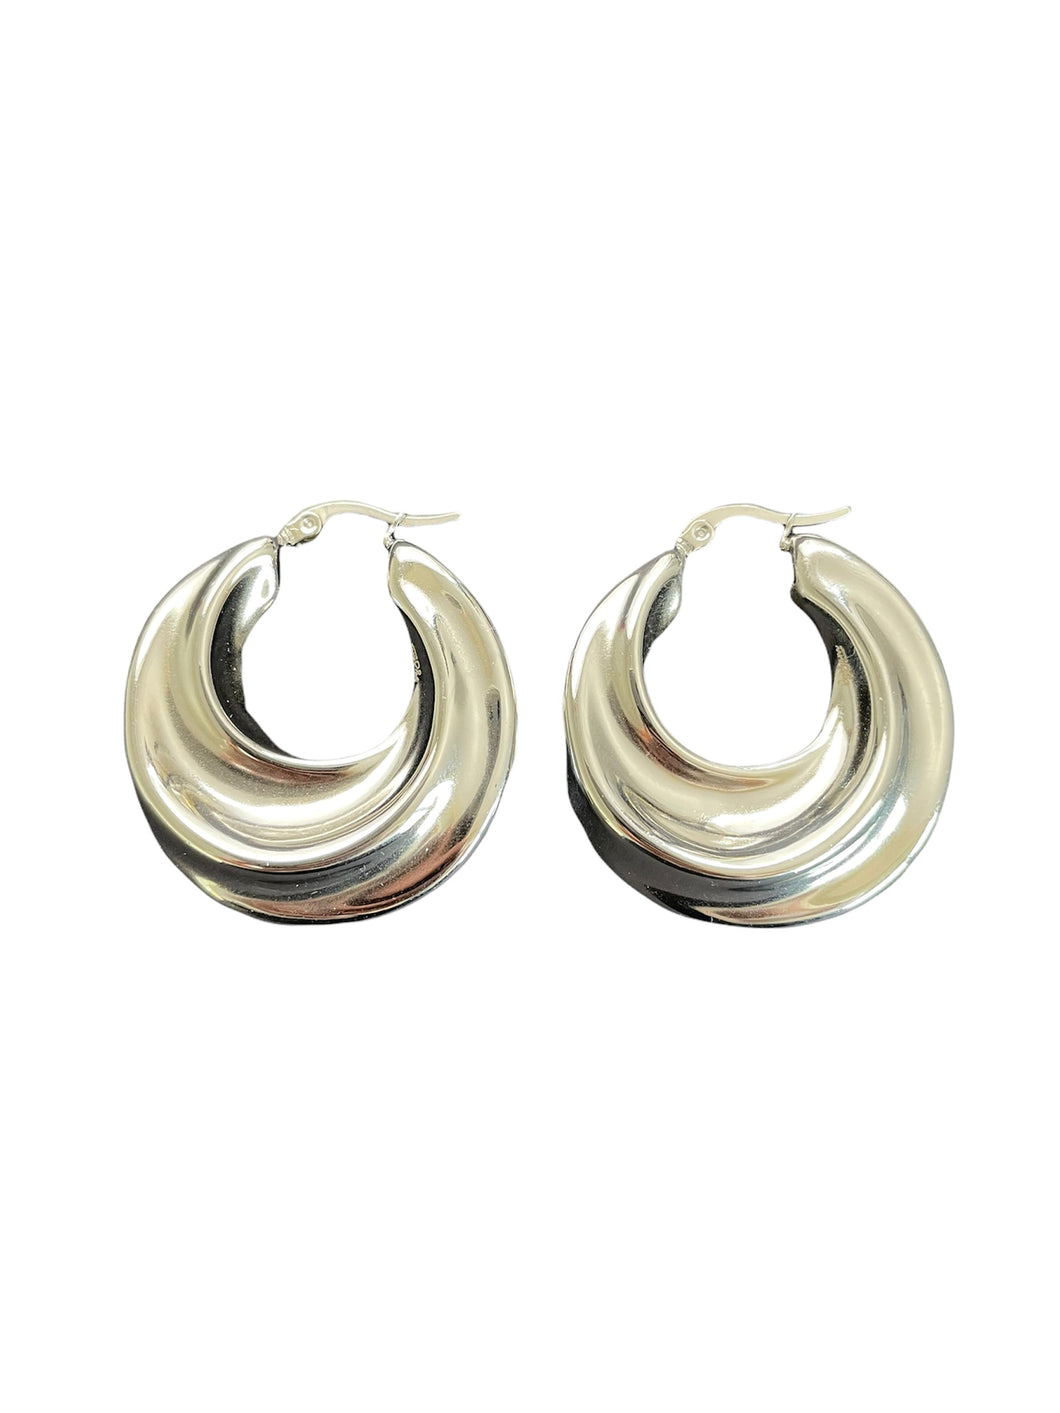 Zilveren oorbellen Lisa zijn mooi vormgegeven. Oorbellen Lisa zijn verkrijgbaar in goud- en zilverkleurig stainless steel en hebben een diameter van ca. 4cm.